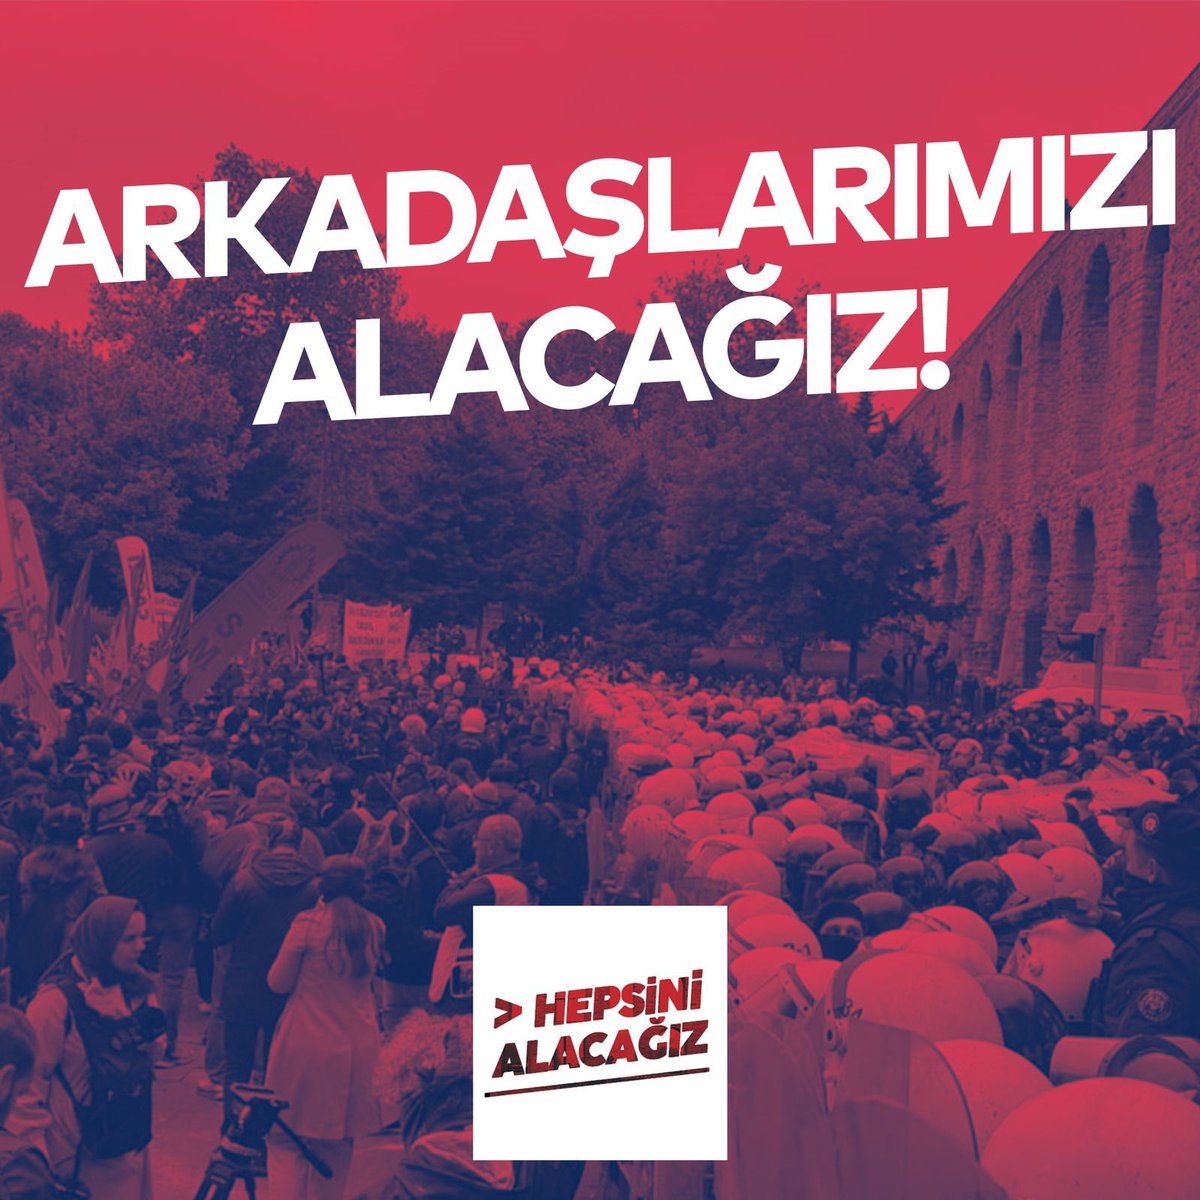 1 Mayıs'ta Taksim’e yürümek isteyen 2 üyemiz, Devrimci Gençlik Dernekleri, Halk-Der, Kaldıraç, SEP ve SMF’den yoldaşlarımızla birlikte sabah ev baskınlarıyla gözaltına alındı. Mücadelemiz devam ediyor; Taksim’i de, arkadaşlarımızı da geri alacağız! #HepsiniAlacağız